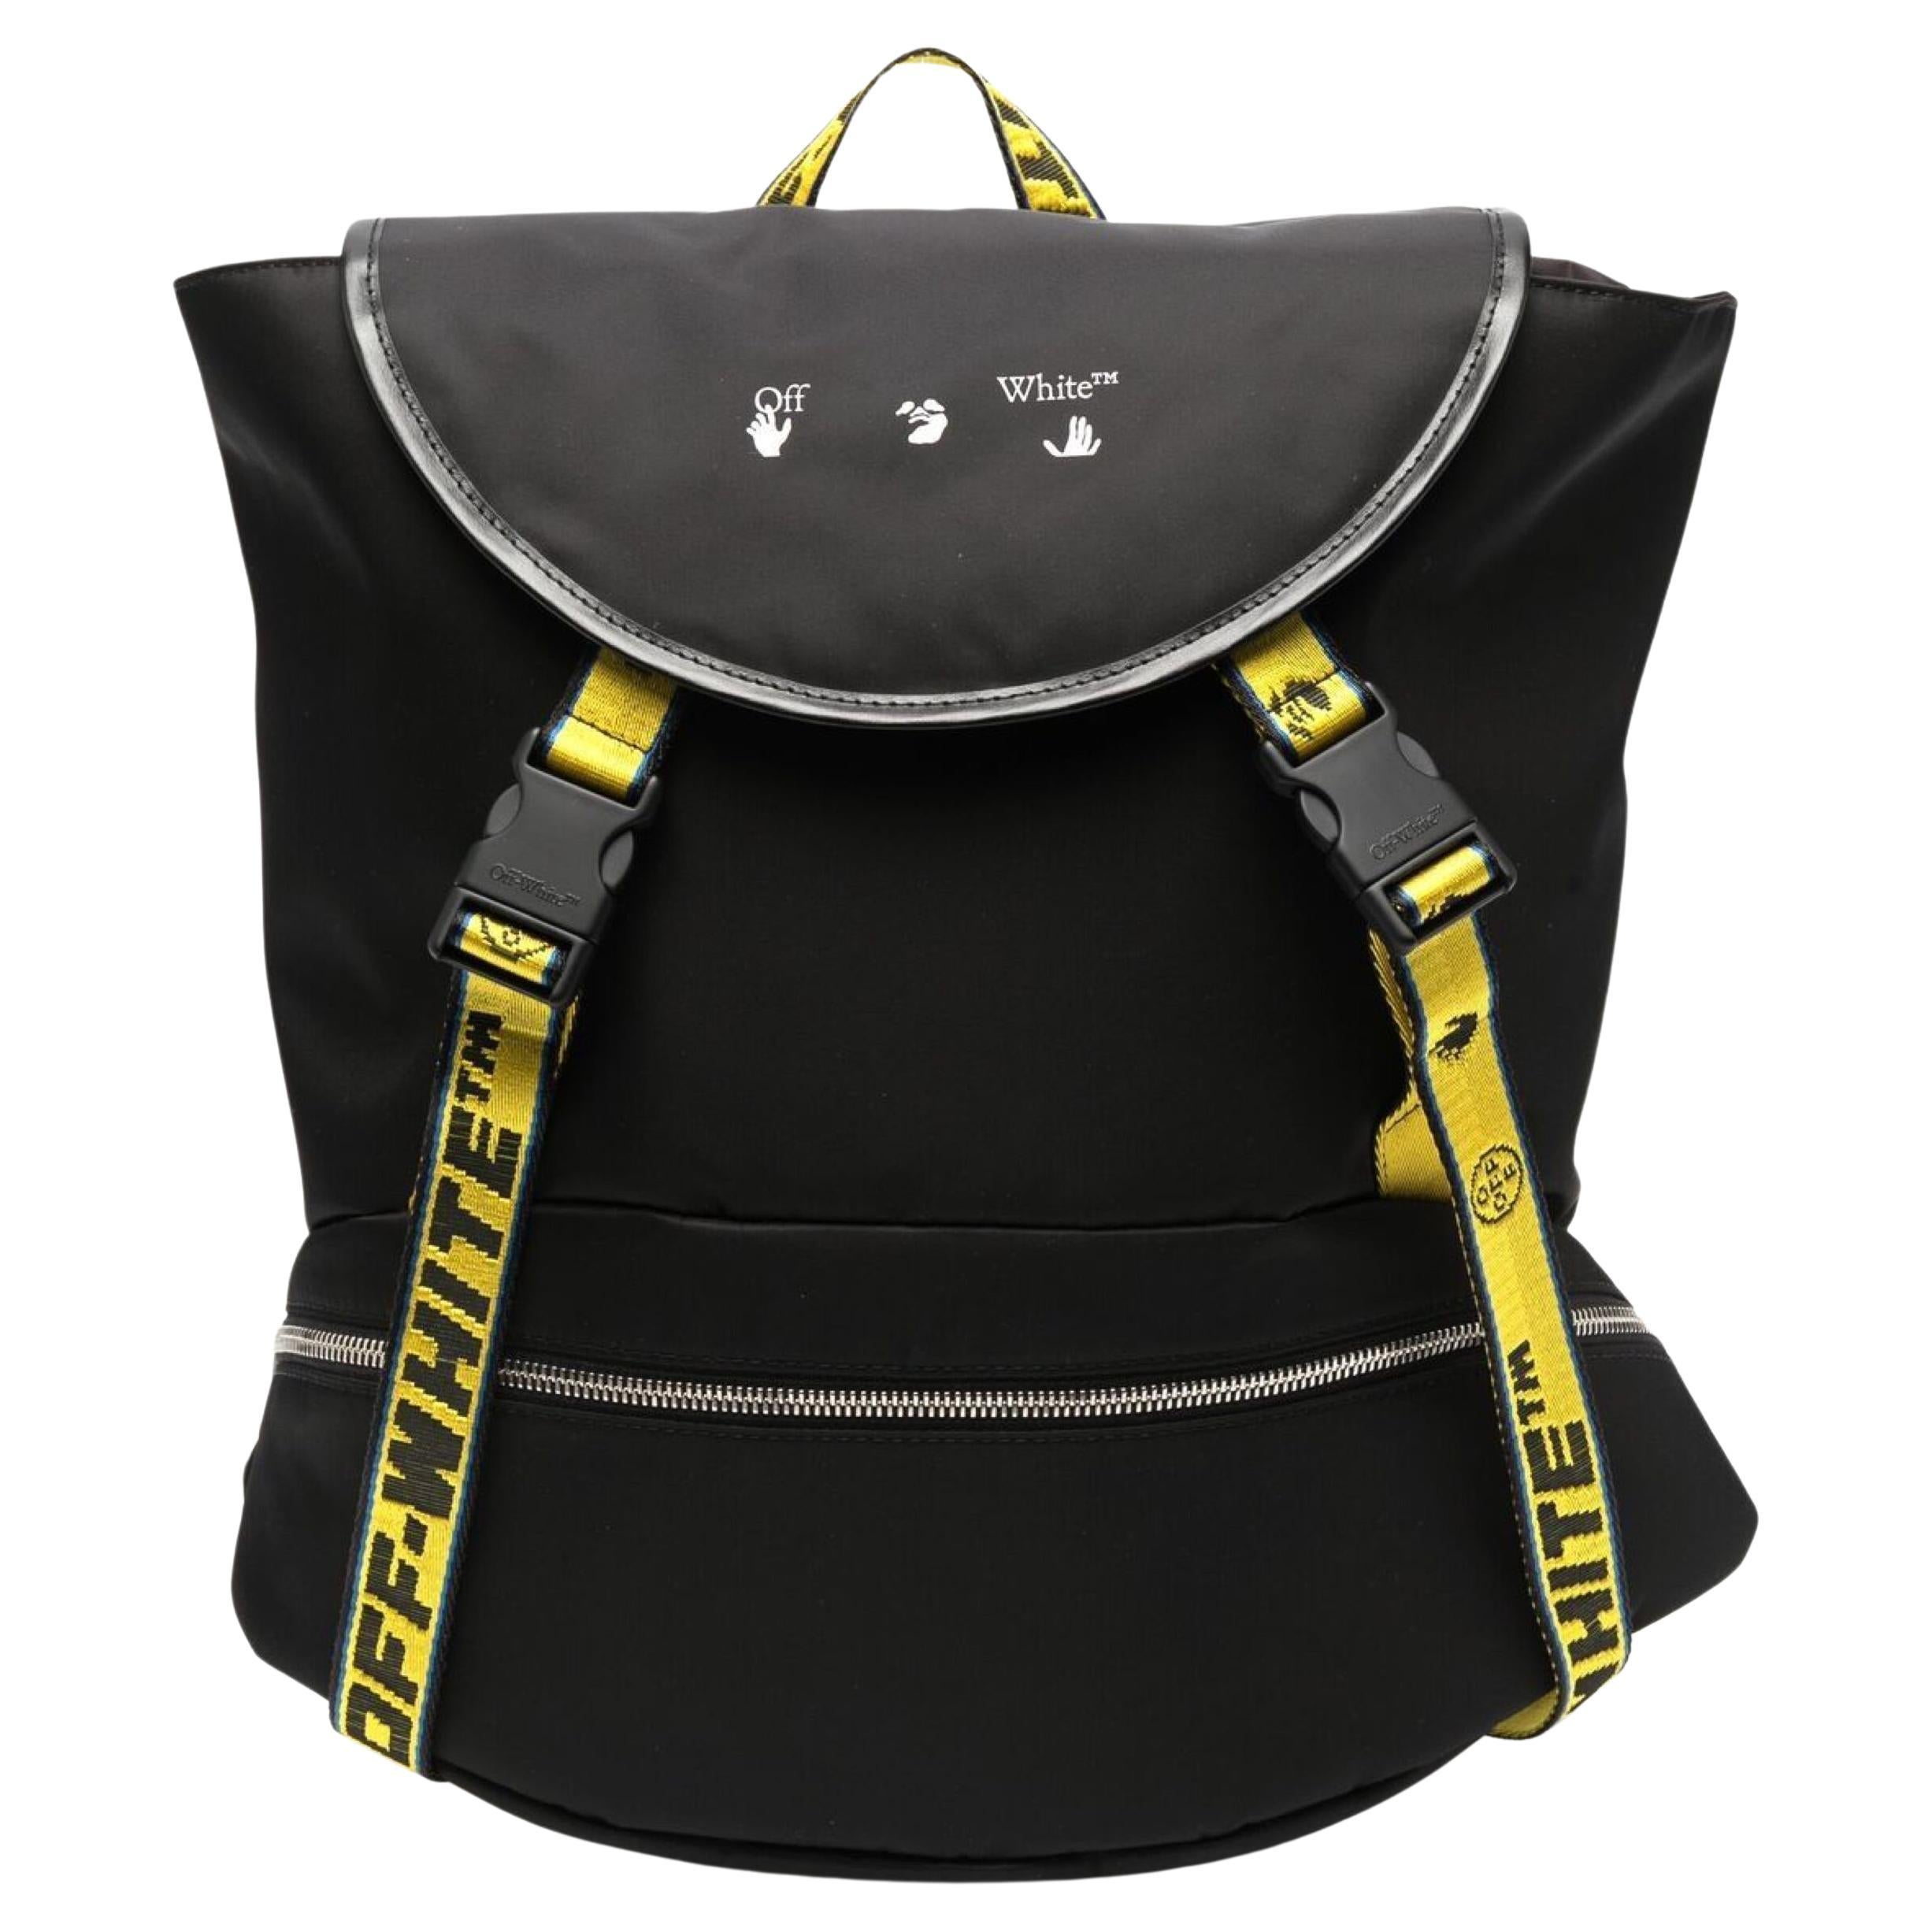 NEW Off-White Virgil Abloh Black Industrial Strap Nylon Backpack Rucksack Bag For Sale